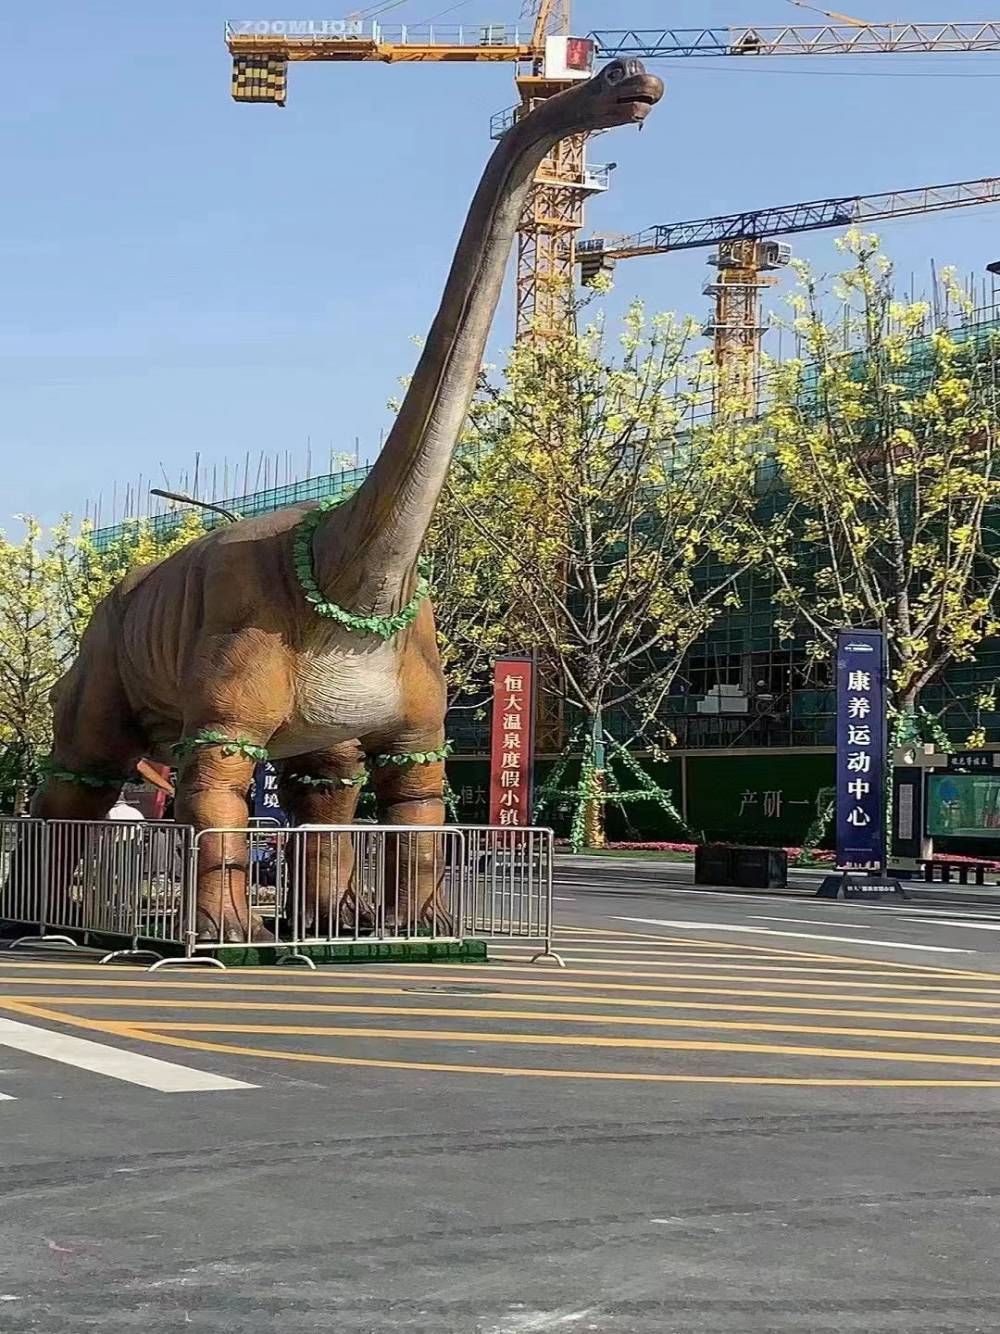 景区美陈道具出租 大型动态仿真恐龙模型出售 恐龙展租赁